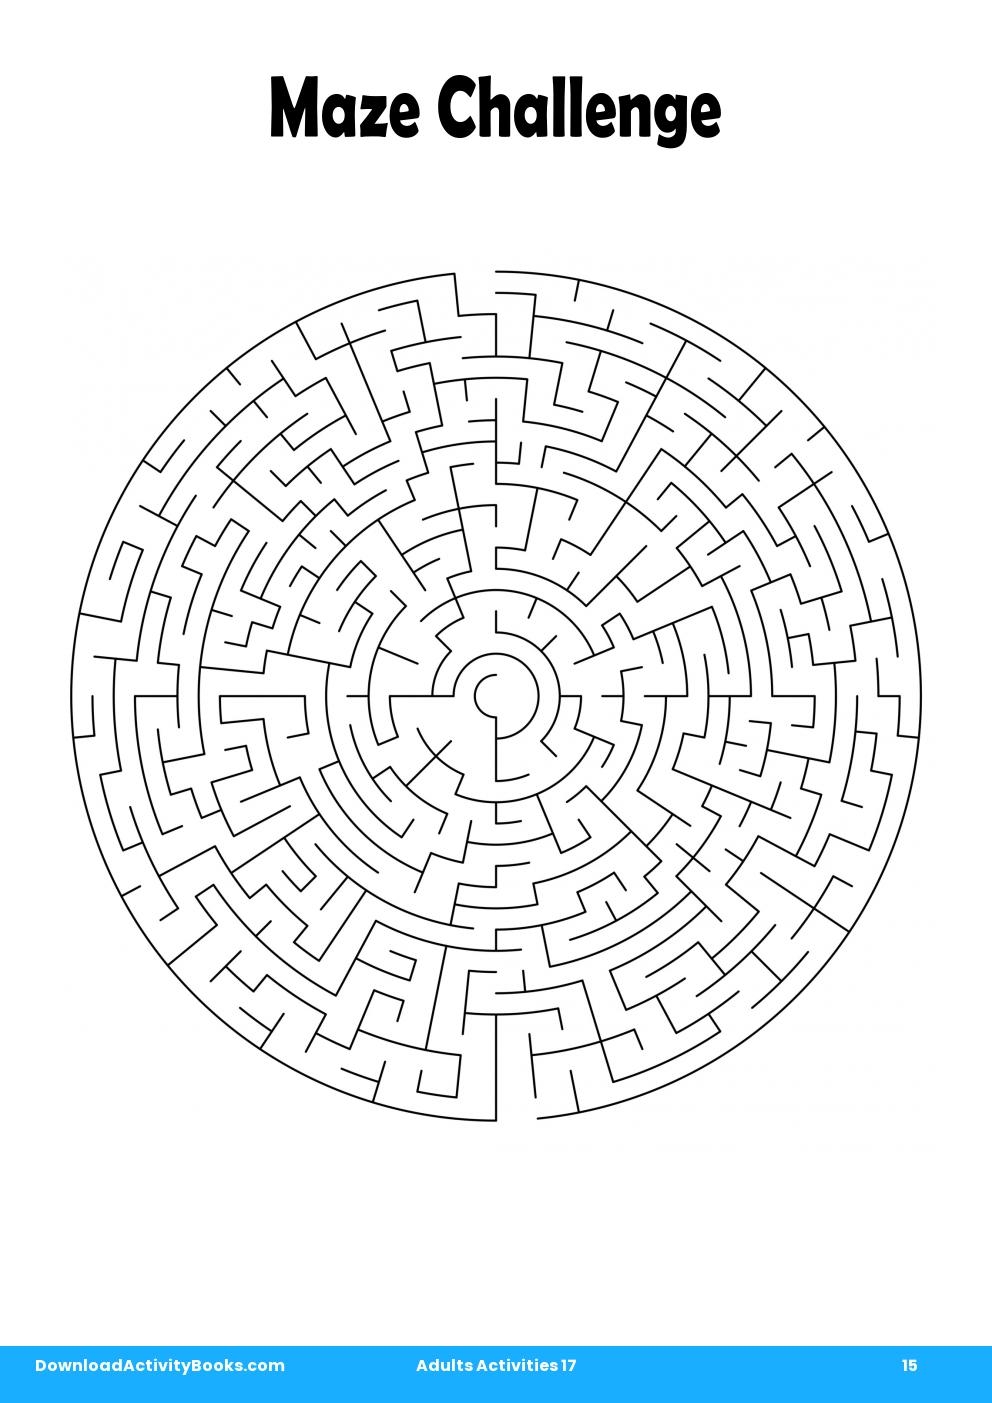 Maze Challenge in Adults Activities 17